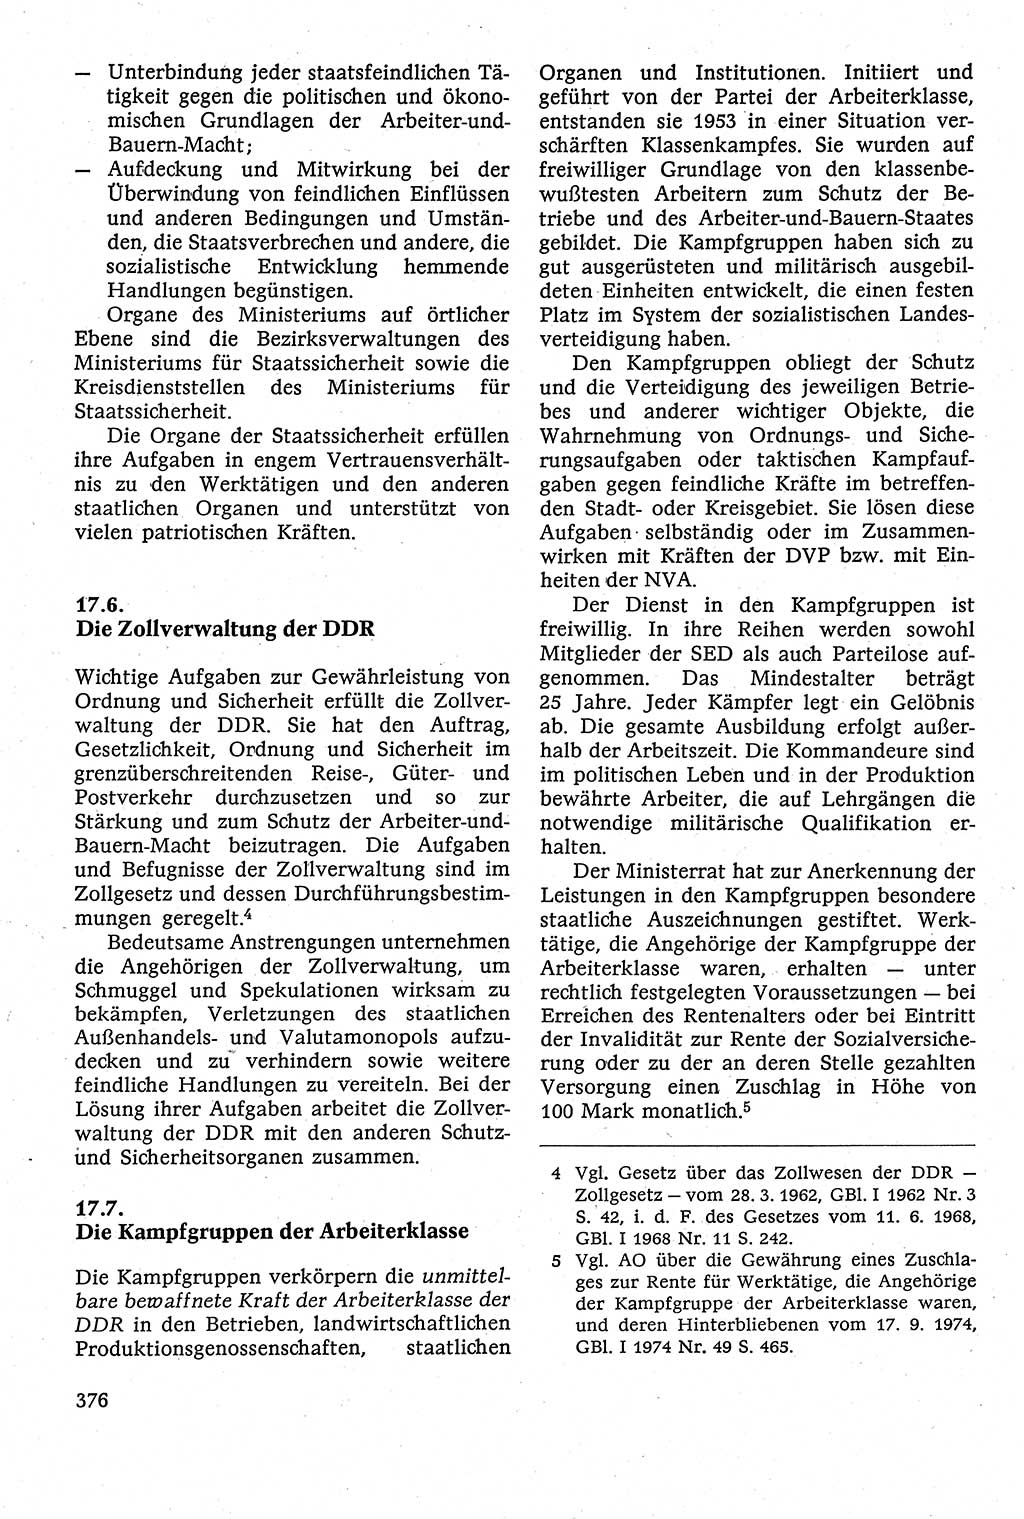 Staatsrecht der DDR [Deutsche Demokratische Republik (DDR)], Lehrbuch 1984, Seite 376 (St.-R. DDR Lb. 1984, S. 376)